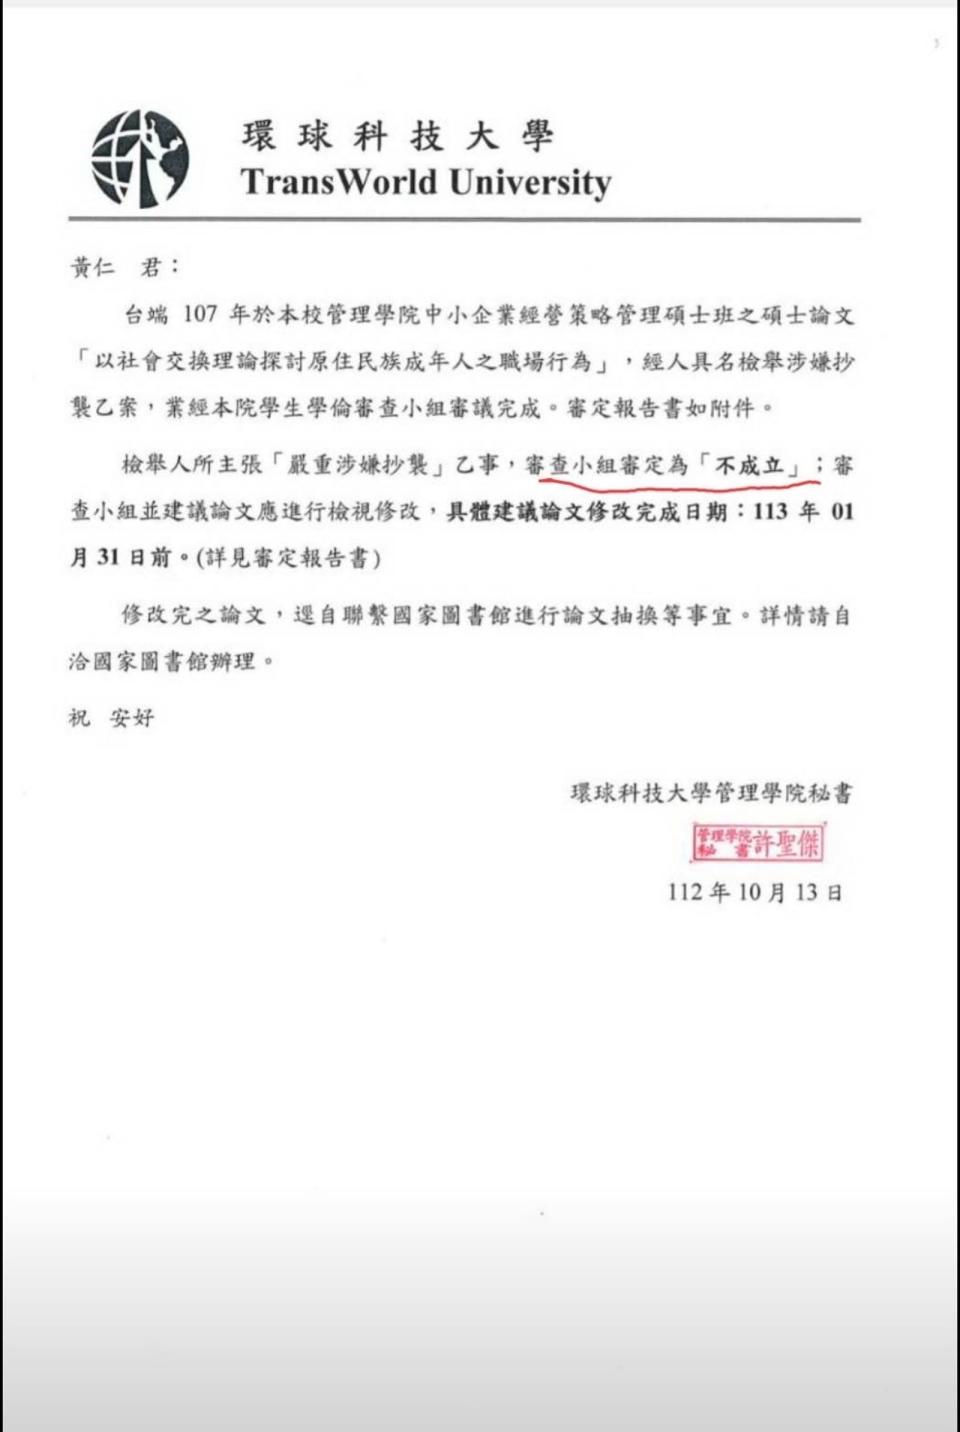 環球科大公文證明黃仁的碩士論文抄襲｢不成立｣。（黃仁競選總部提供）